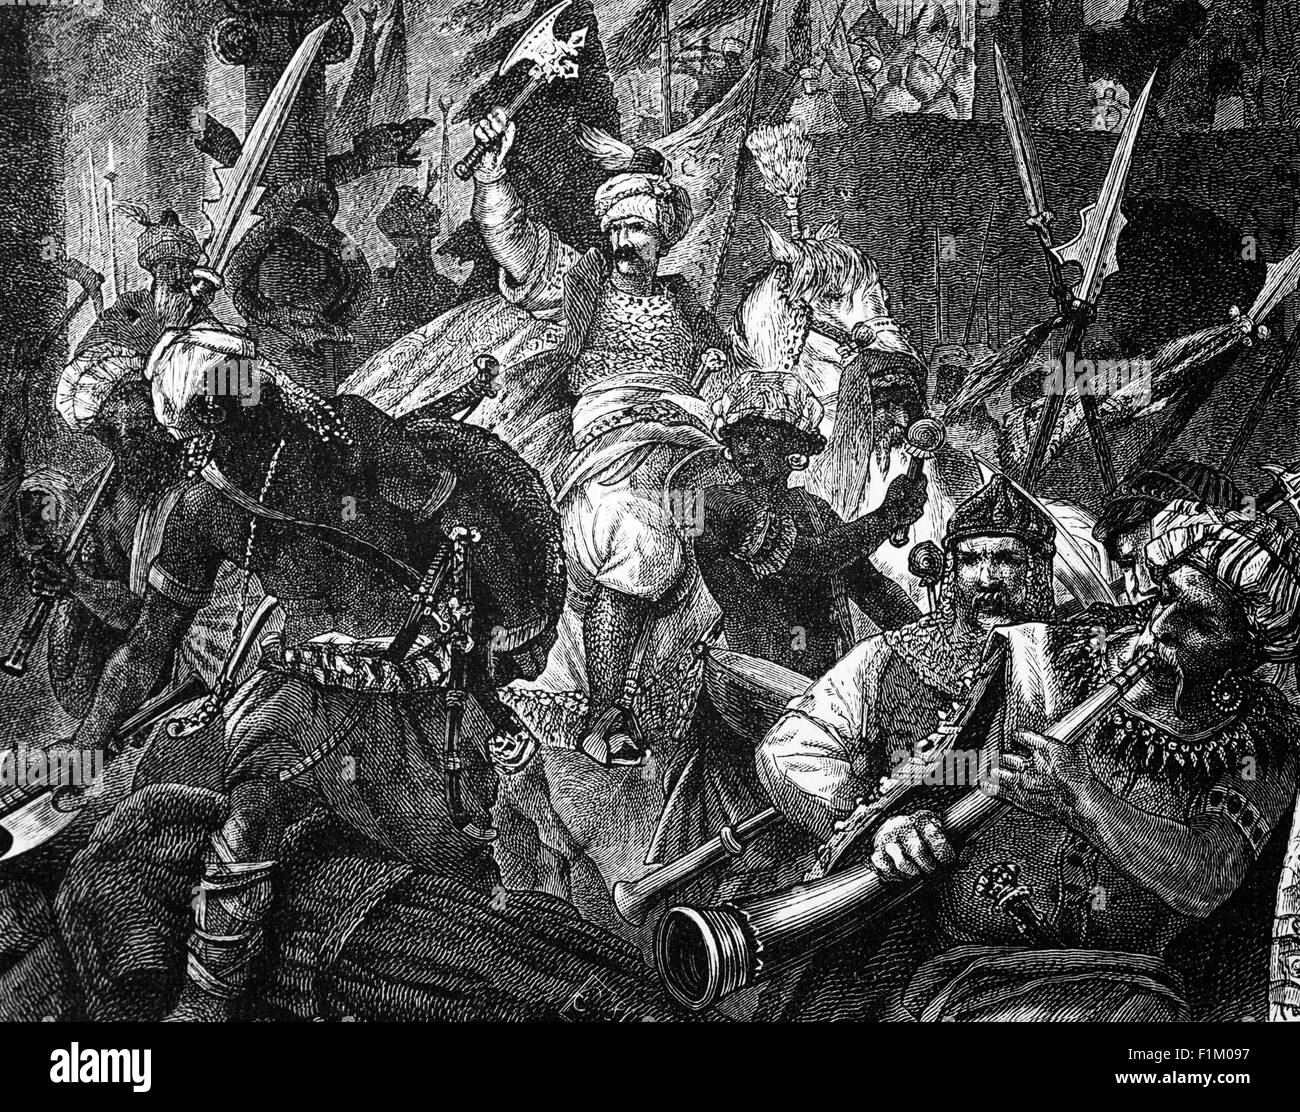 I Mori islamici che hanno vinto la battaglia di Alcácer Quibir (AKA Alcassar e 'Battaglia dei tre re' combatté nel nord del Marocco, vicino alla città di Ksar-el-Kebir il 4 agosto 1578. I combattenti erano l'esercito del Sultano marocchino deposto Abu Abdallah Mohammed II, con il suo alleato, il re del Portogallo Sebastian i, contro un grande esercito marocchino sotto il nuovo sultano del Marocco (e zio di Abu Abdallah Mohammed II) Abd al-Malik I. Foto Stock